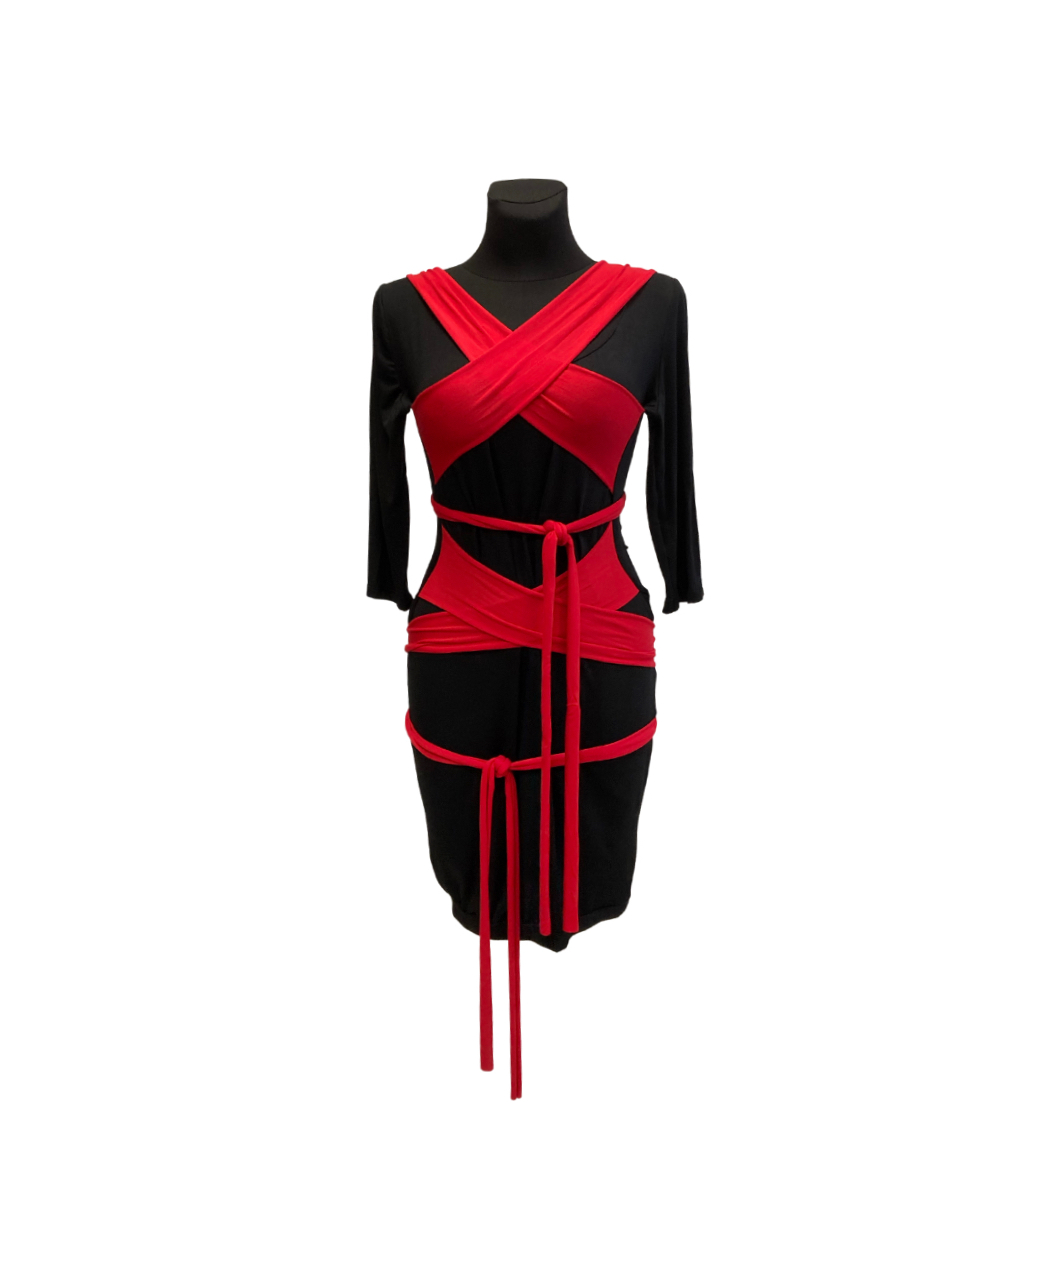 MAKE mustast tencelist kleit sisseõmmeldud punaste sallidega